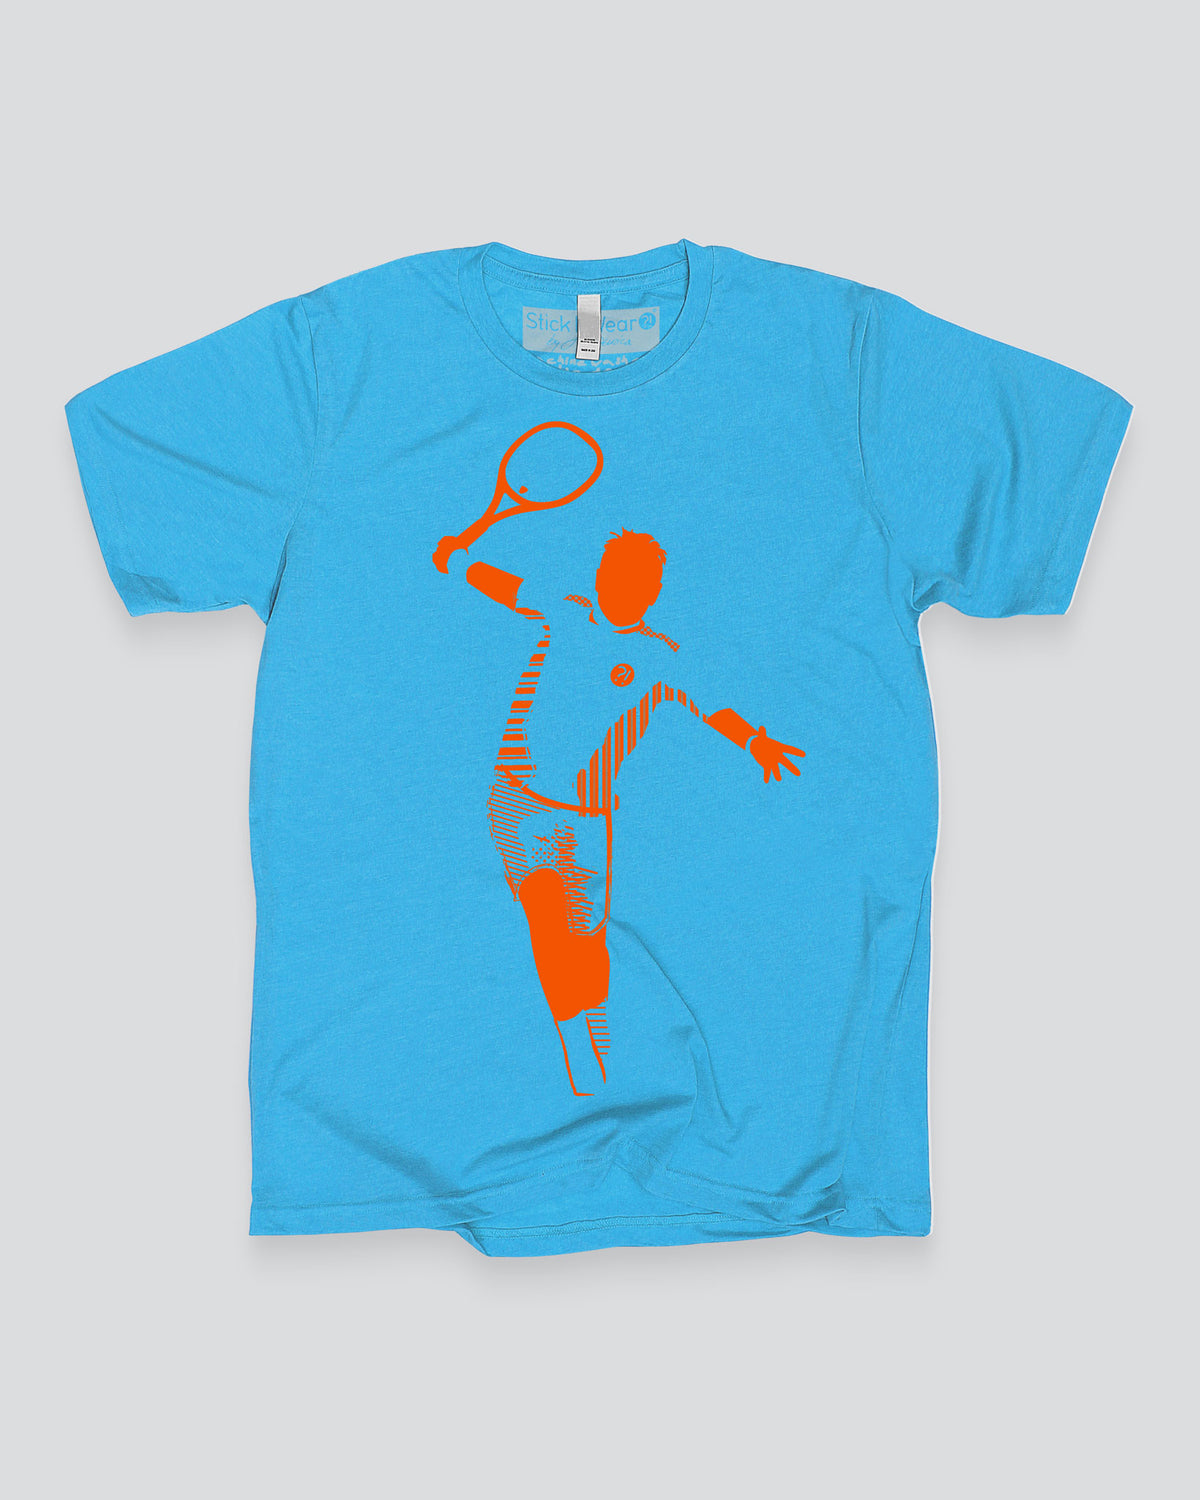 THE MAN Tennis Stance T-Shirt